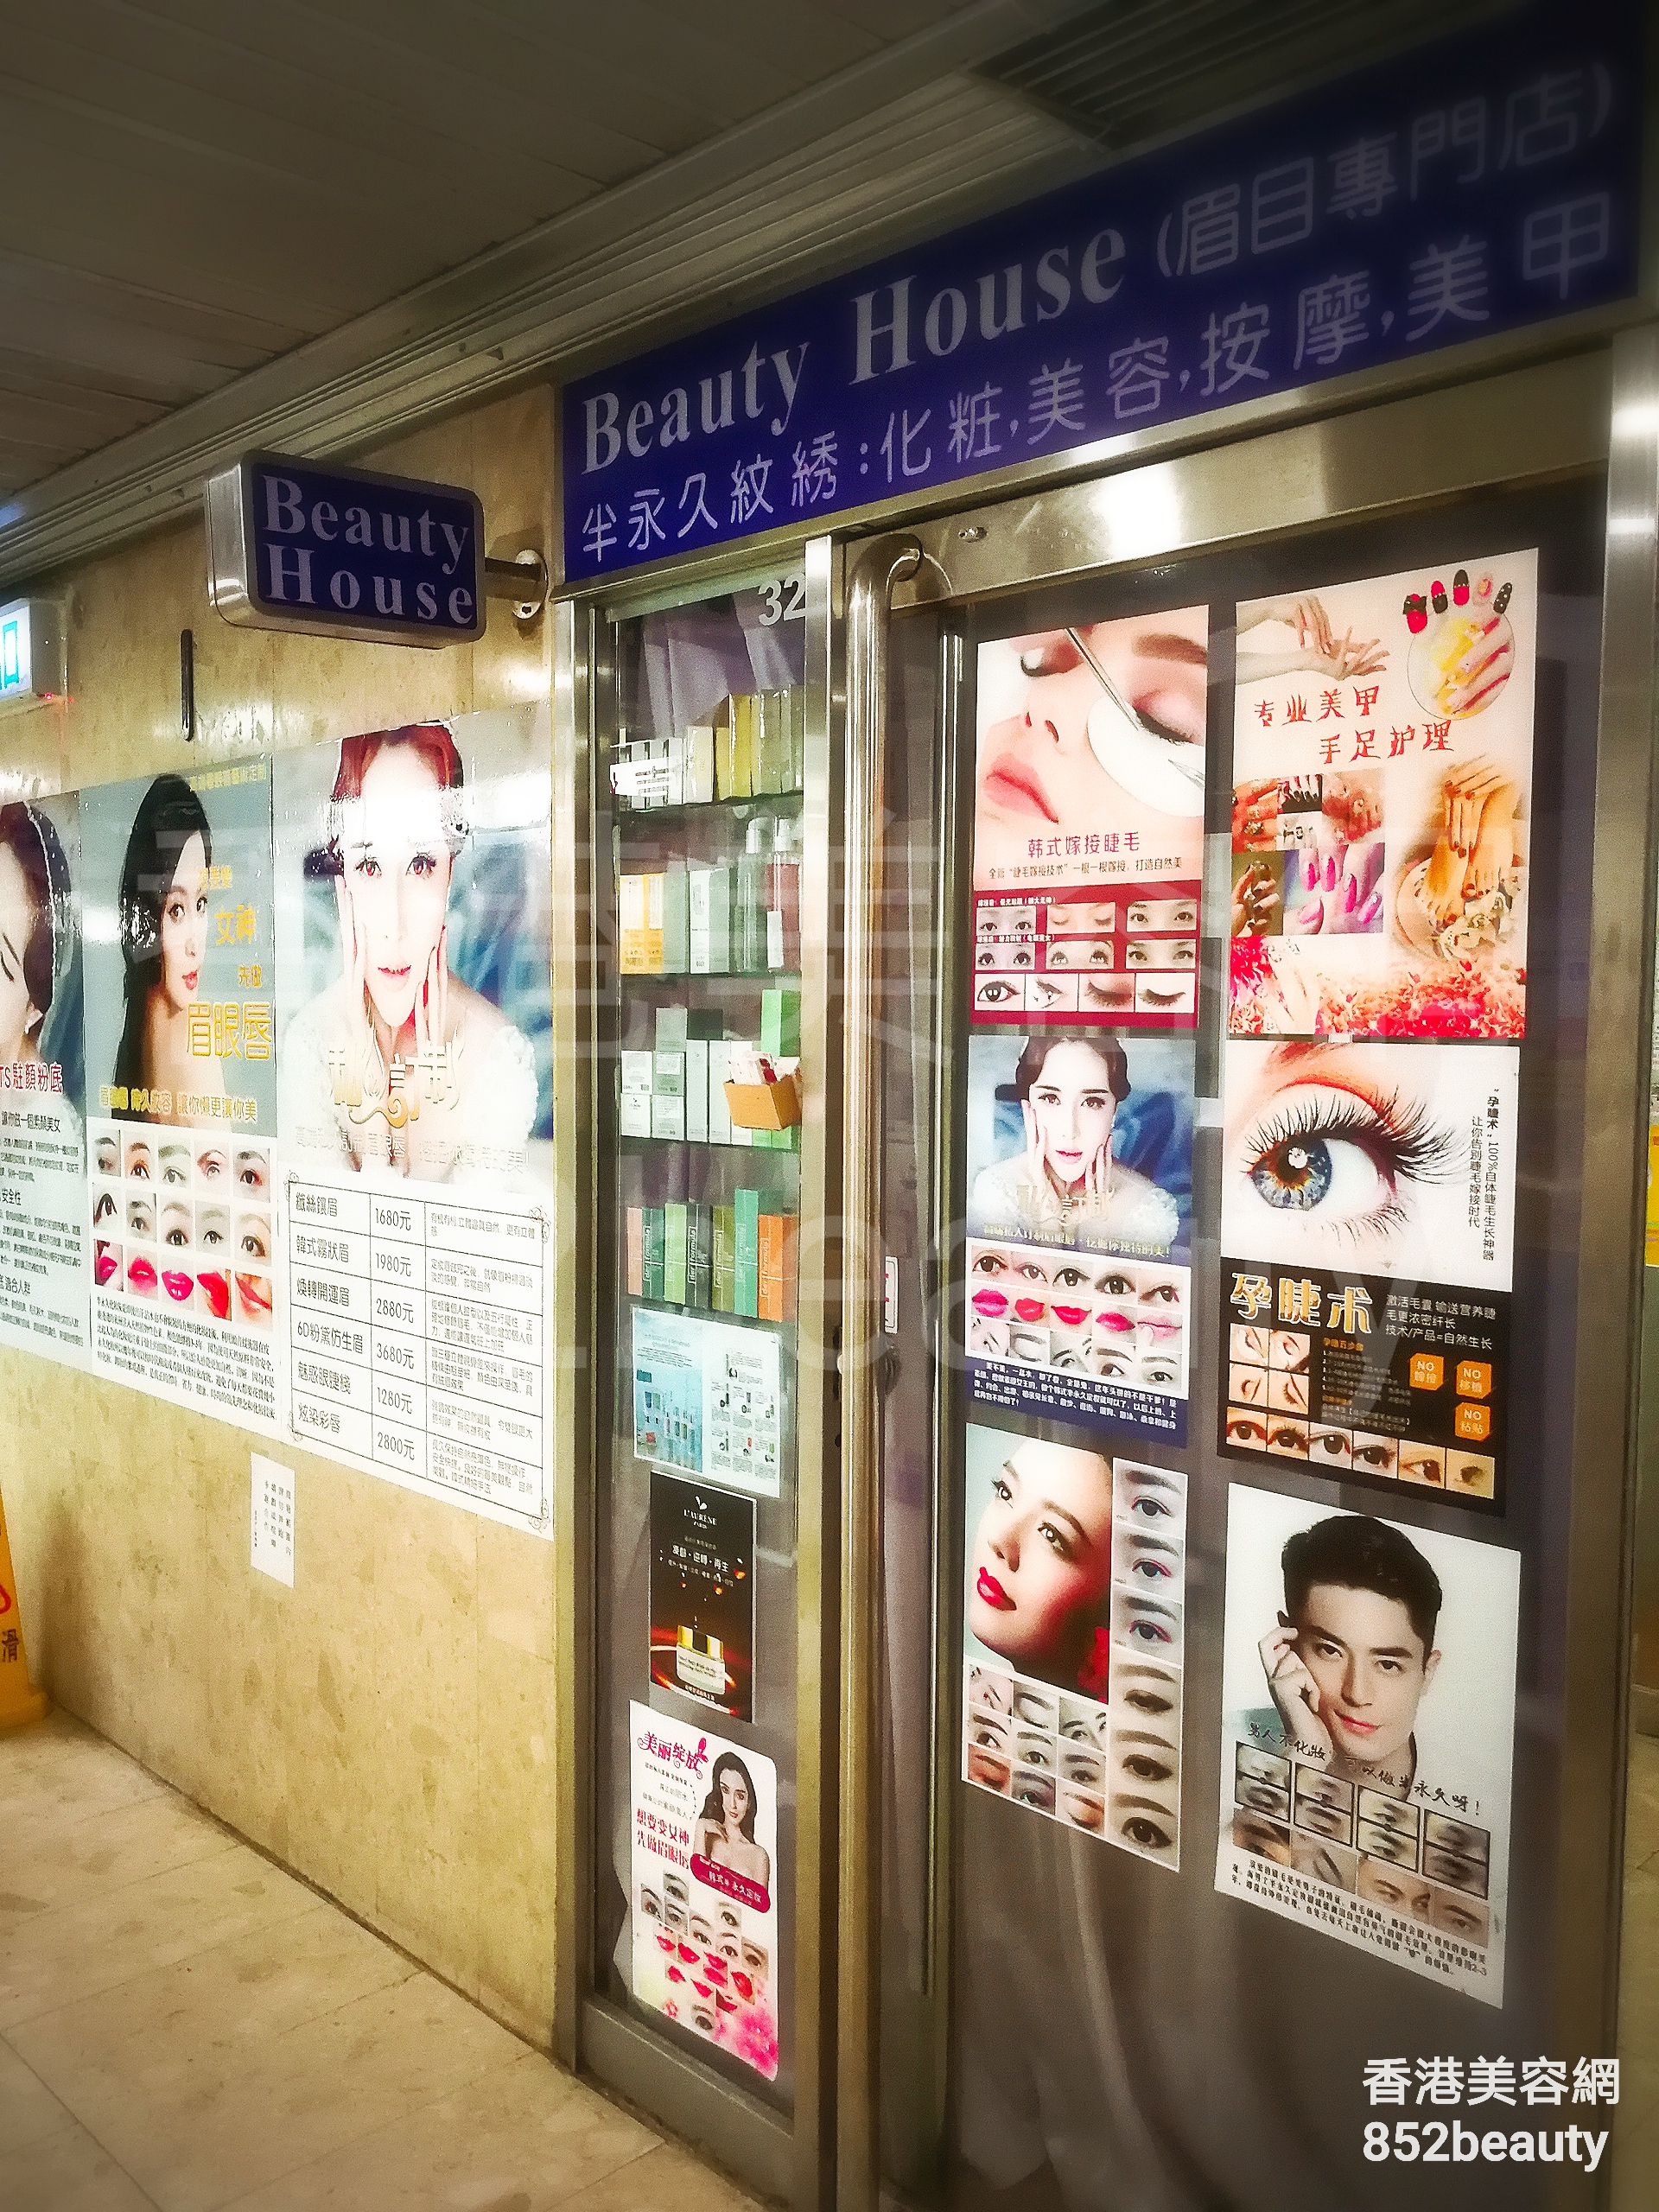 脱毛: Beauty house (眉目專門店)